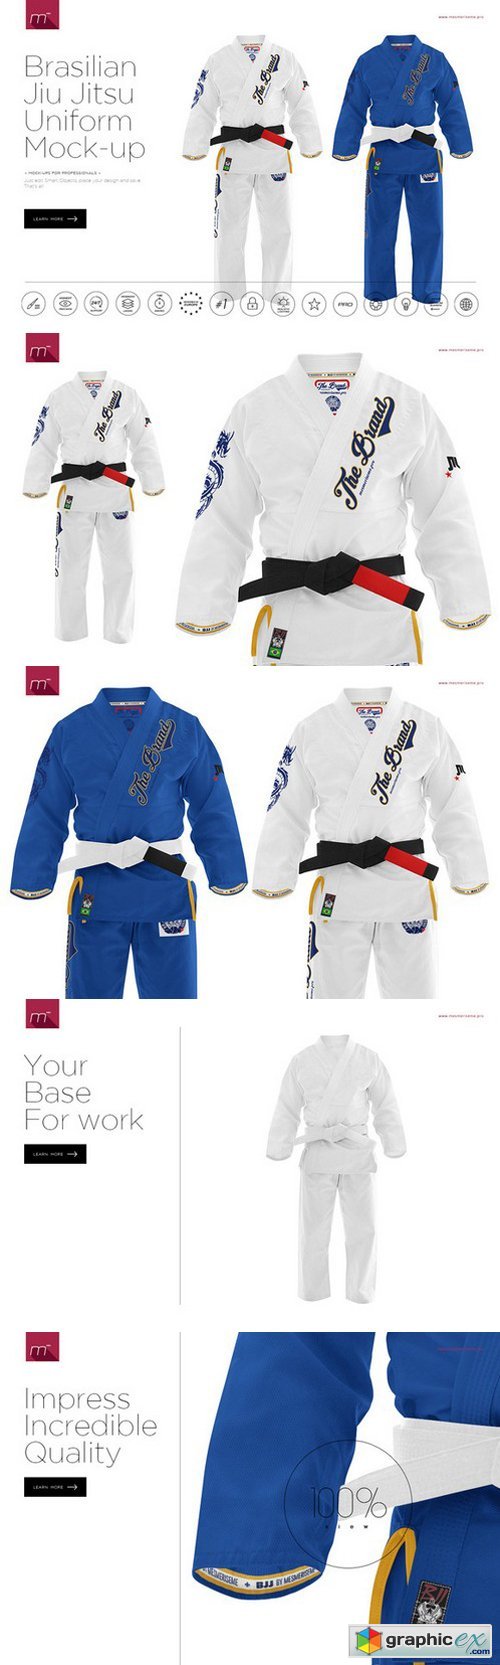 Brasilian Jiu Jitsu Uniform Mock-up